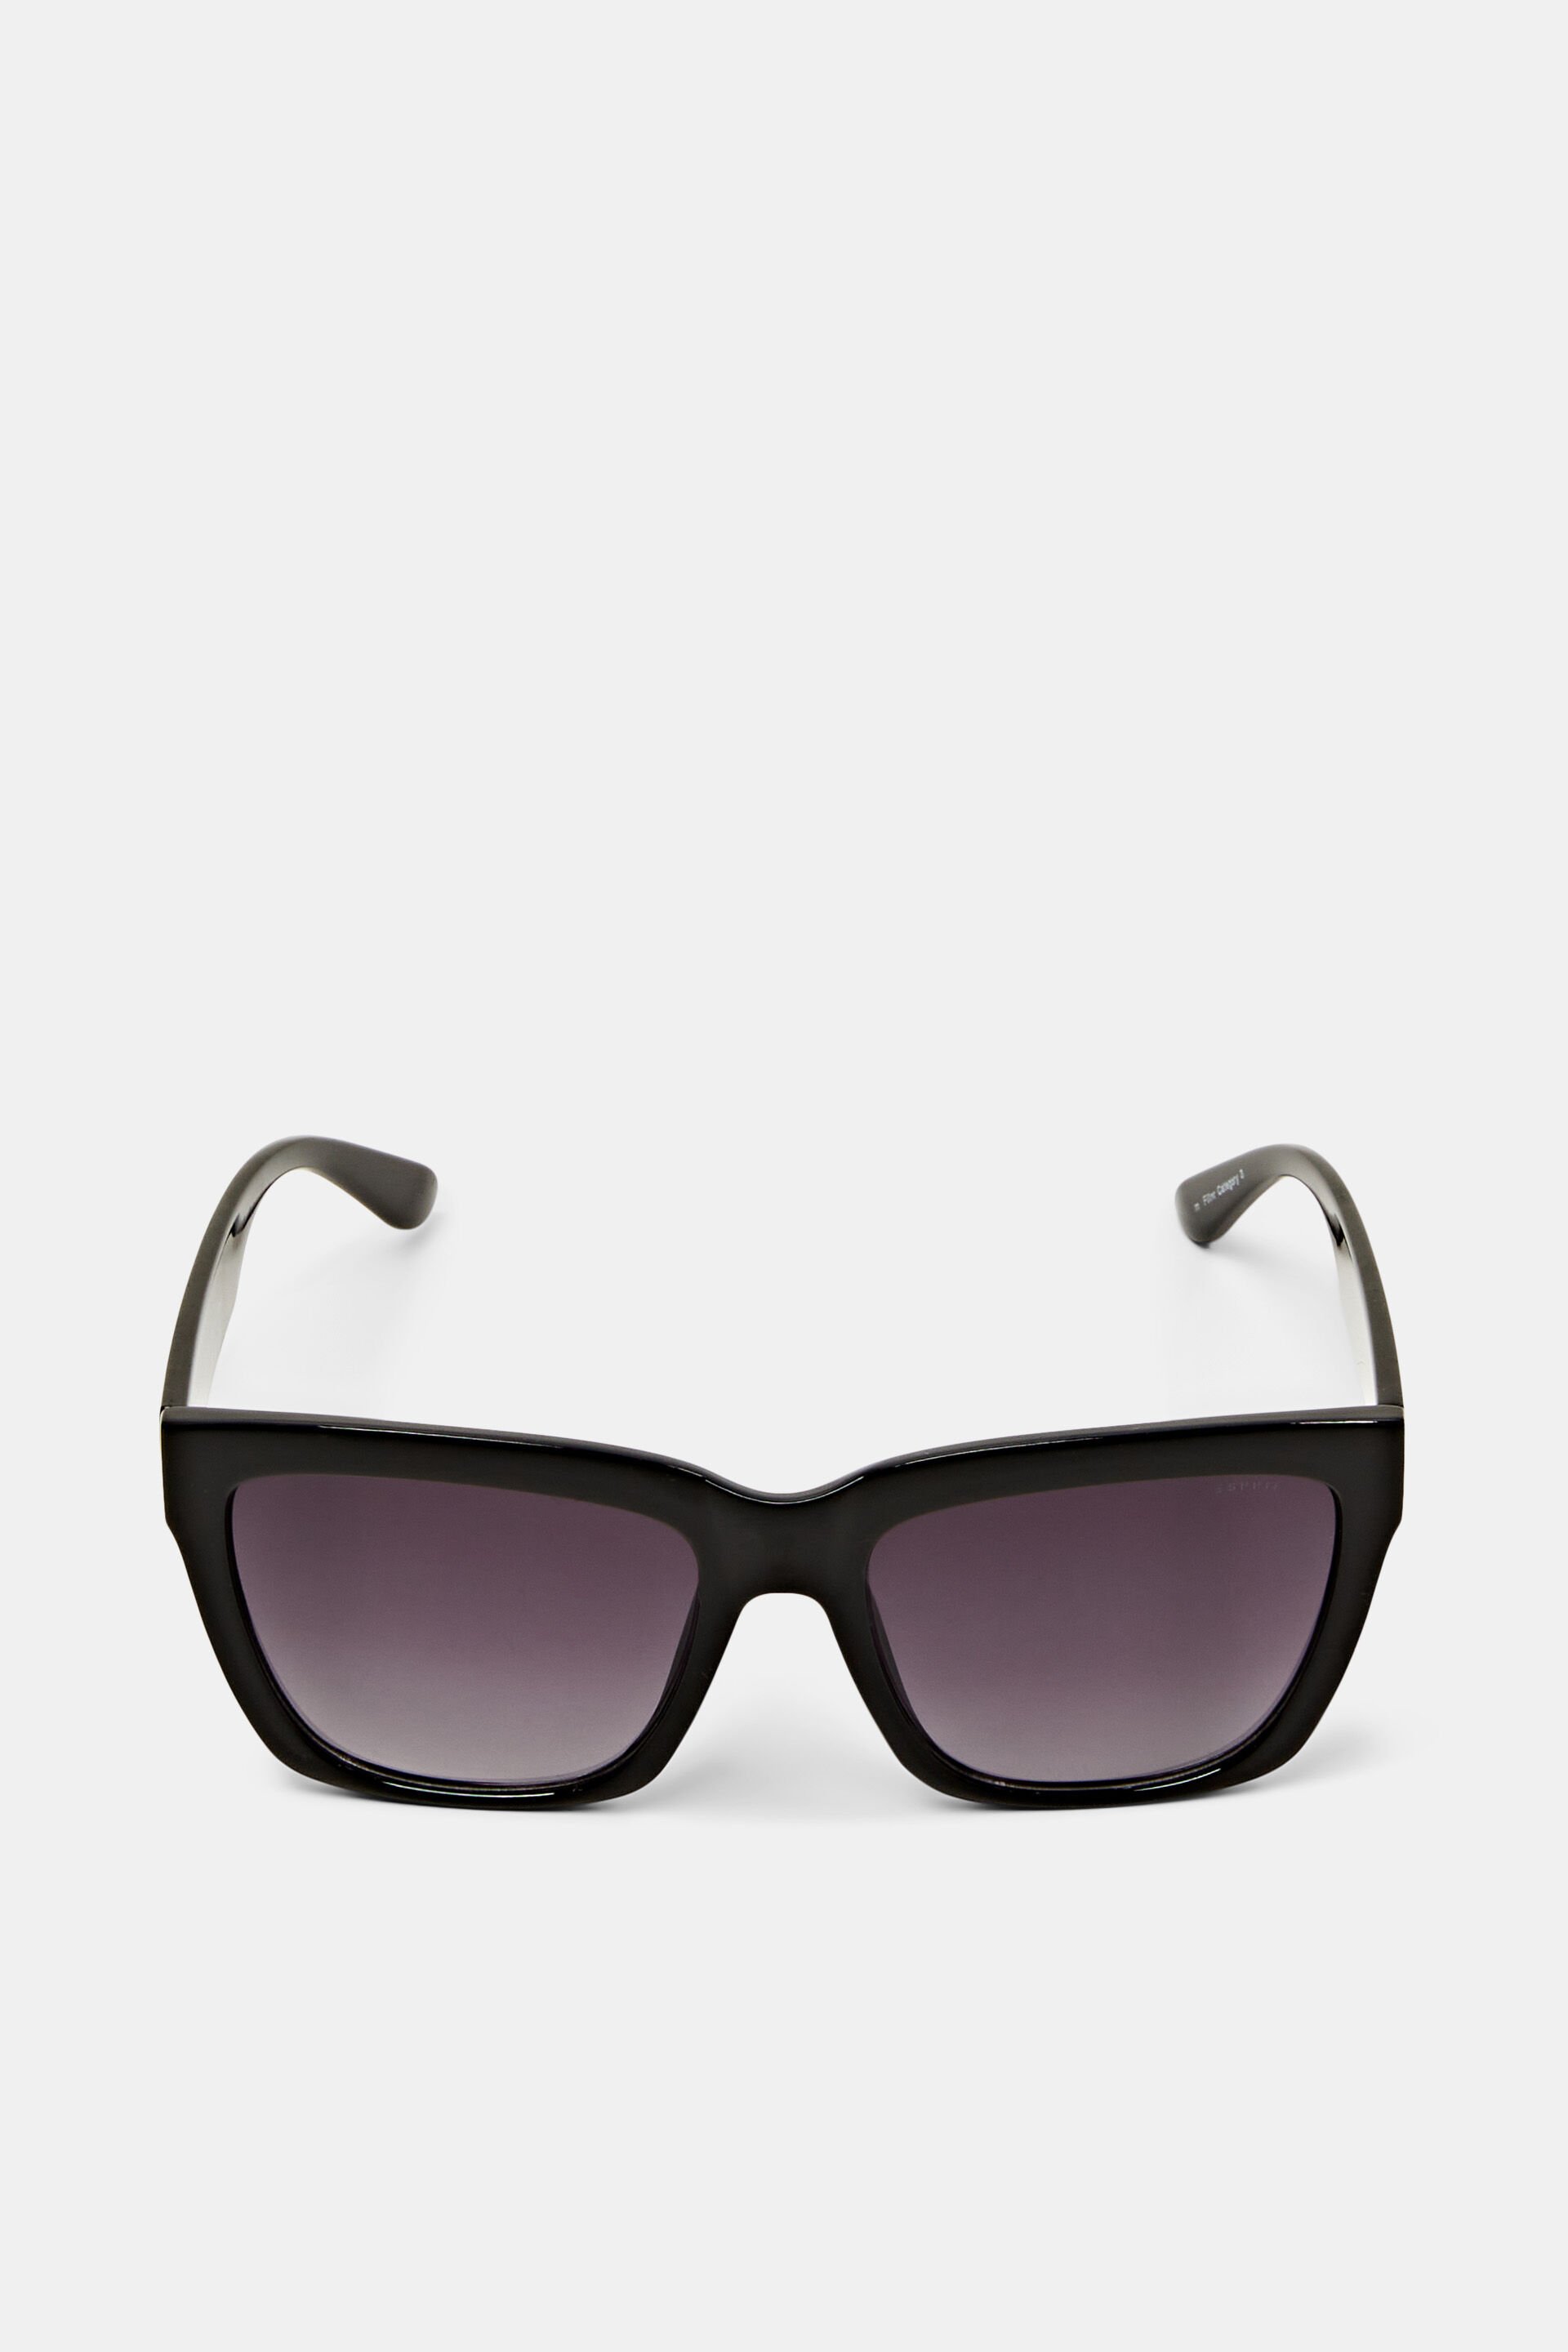 Esprit sunglasses frame Bulky